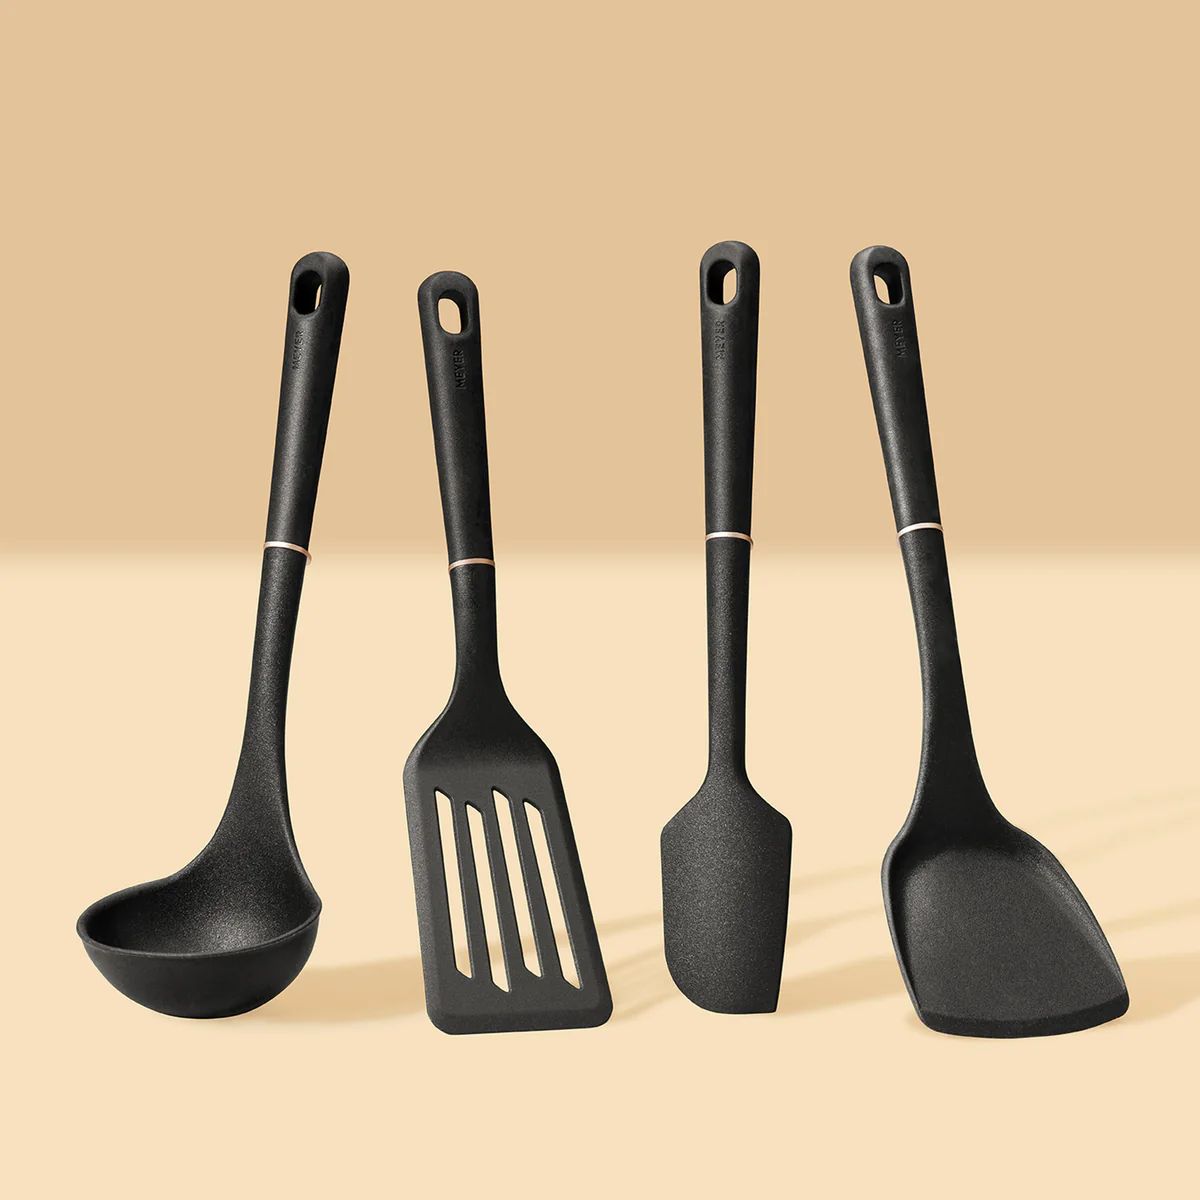 4-Piece Tool Set | Meyer Brand Cookware